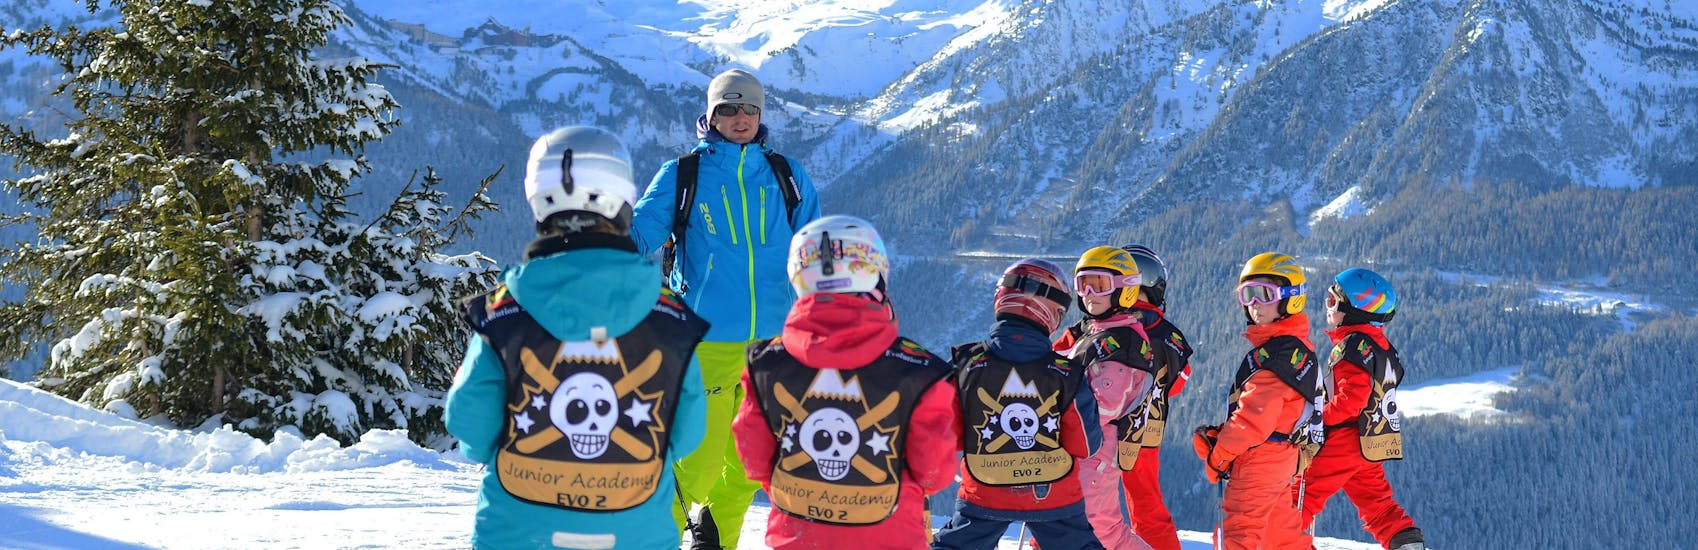 Des petits enfants font leur Premier Cours de ski Enfants (4-5 ans) avec Evolution 2 La Clusaz.